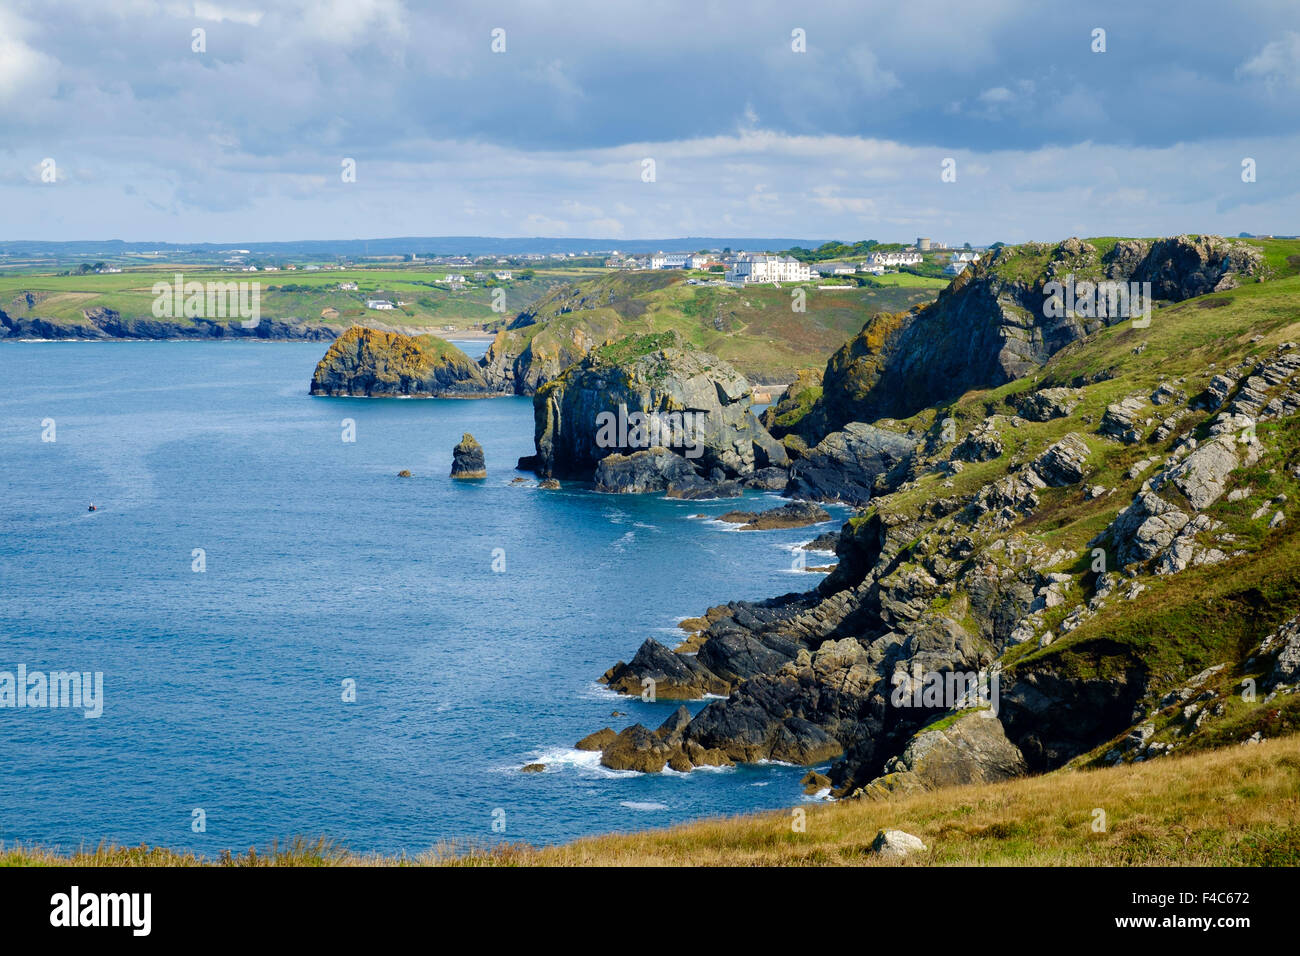 View of Cornish coast UK from South West Coast Path at Mullion Cove, Lizard Peninsula, Cornwall, UK Stock Photo